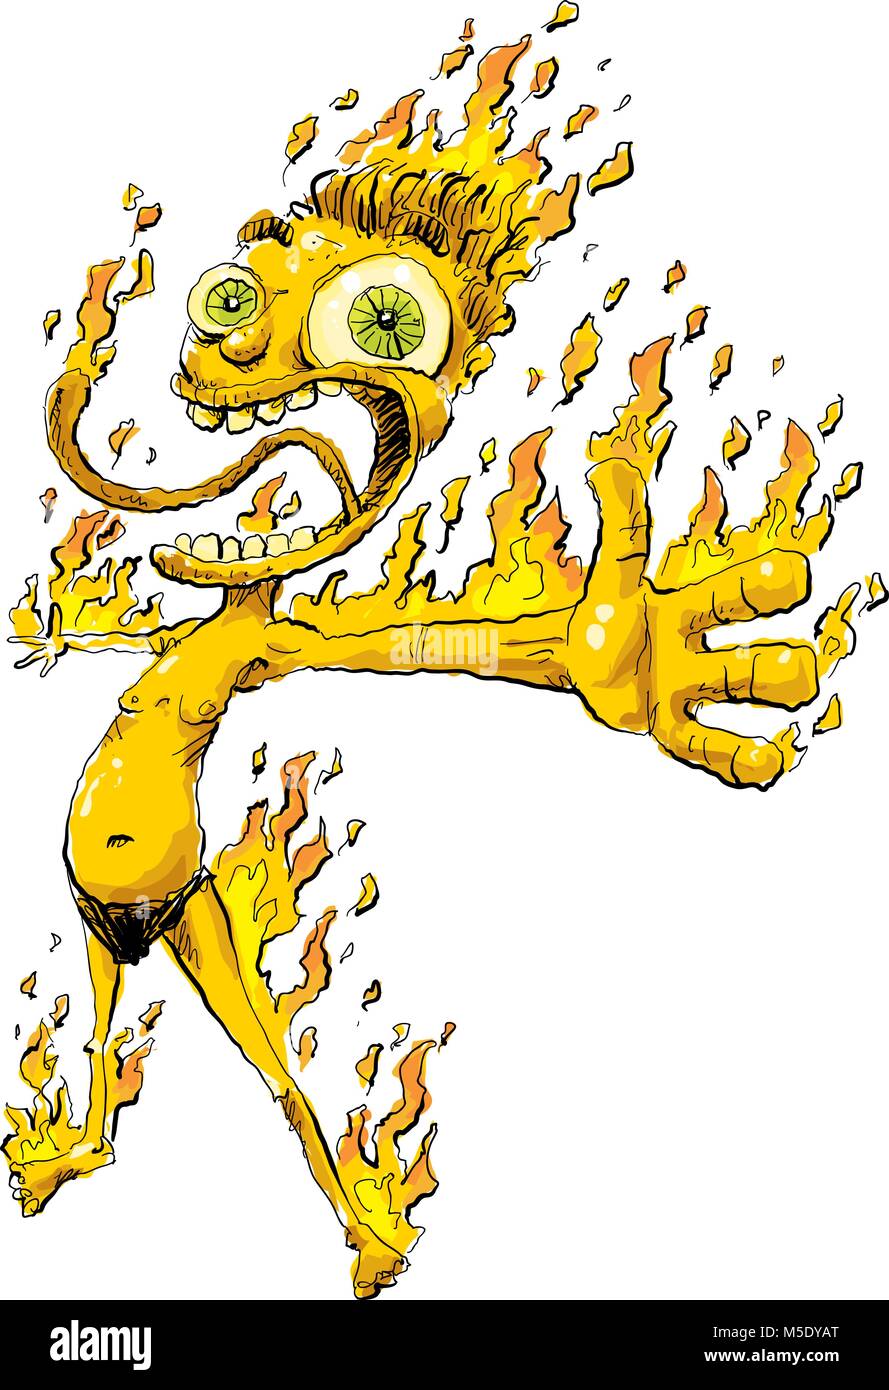 Ein cartoon Mann, der so heiß ist und toll, dass er sich auf Feuer mit Flammen auf seinem Körper. Stock Vektor